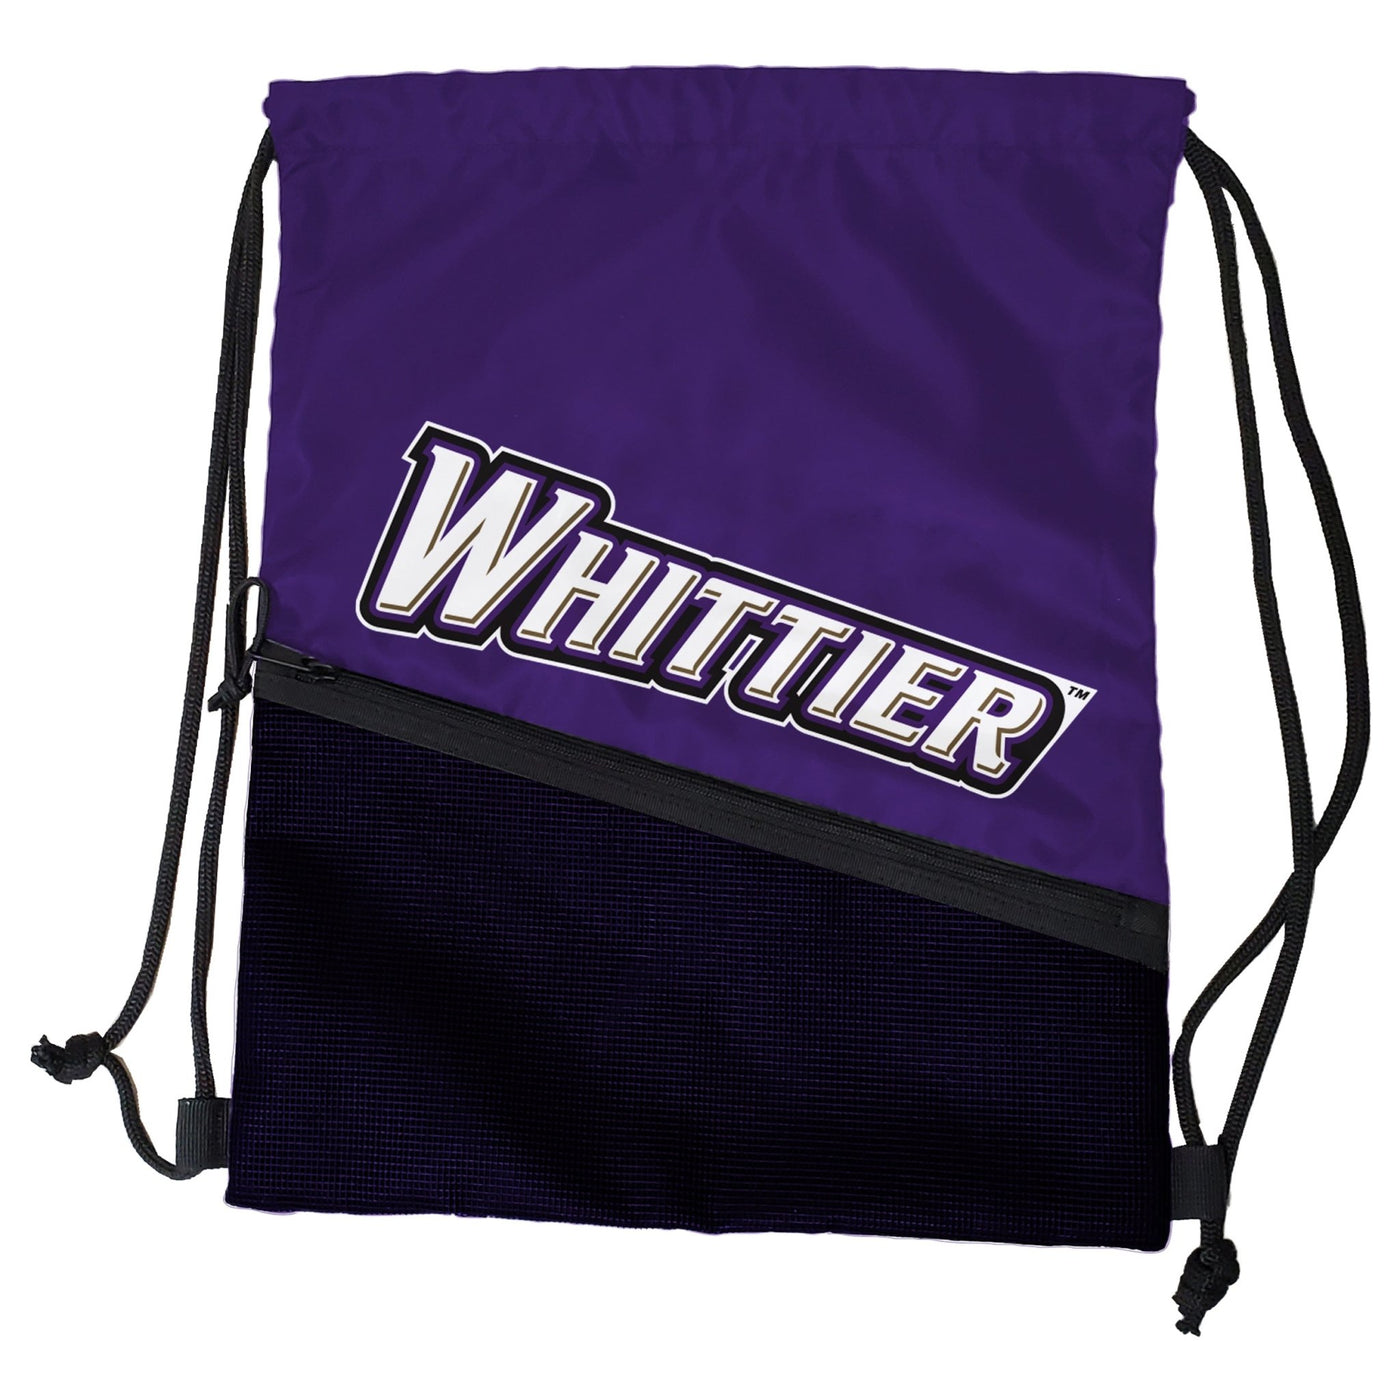 Whittier Tilt Backsack - Logo Brands